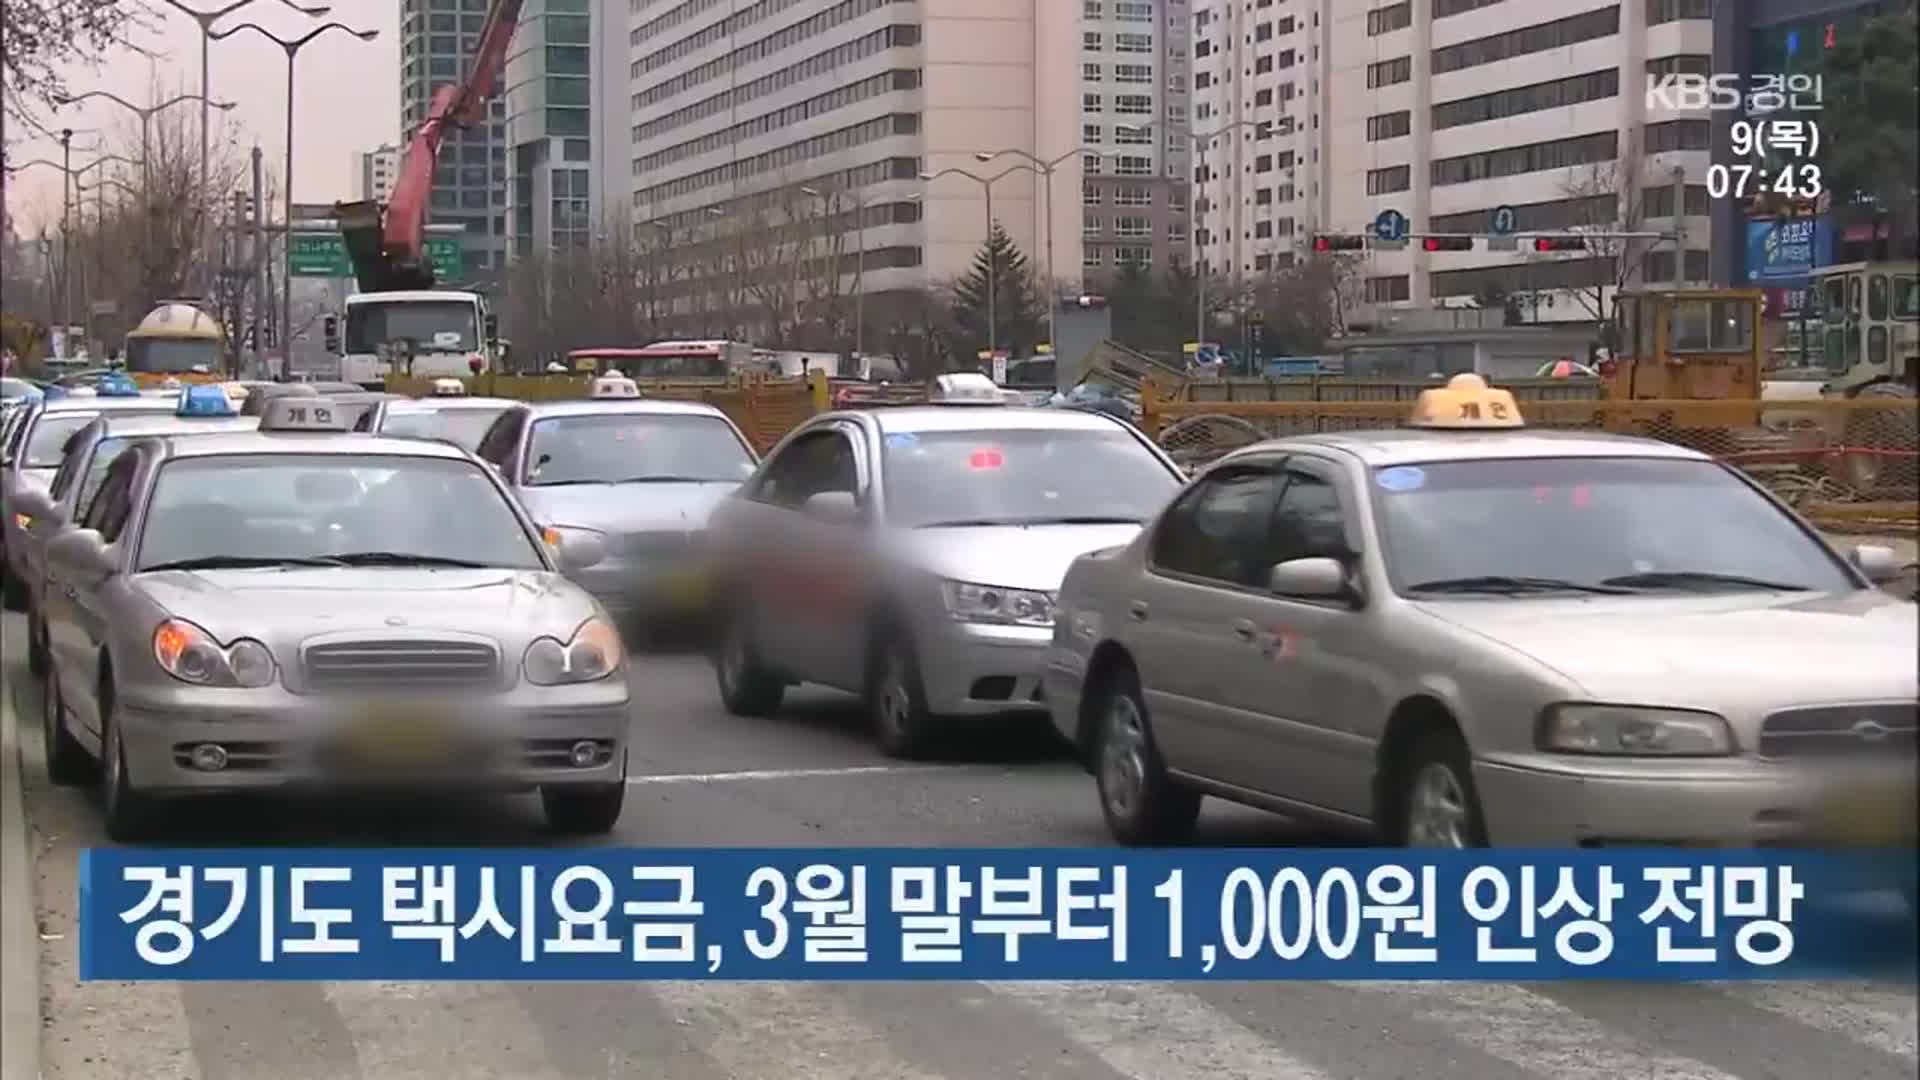 경기도 택시요금, 3월 말부터 1,000원 인상 전망